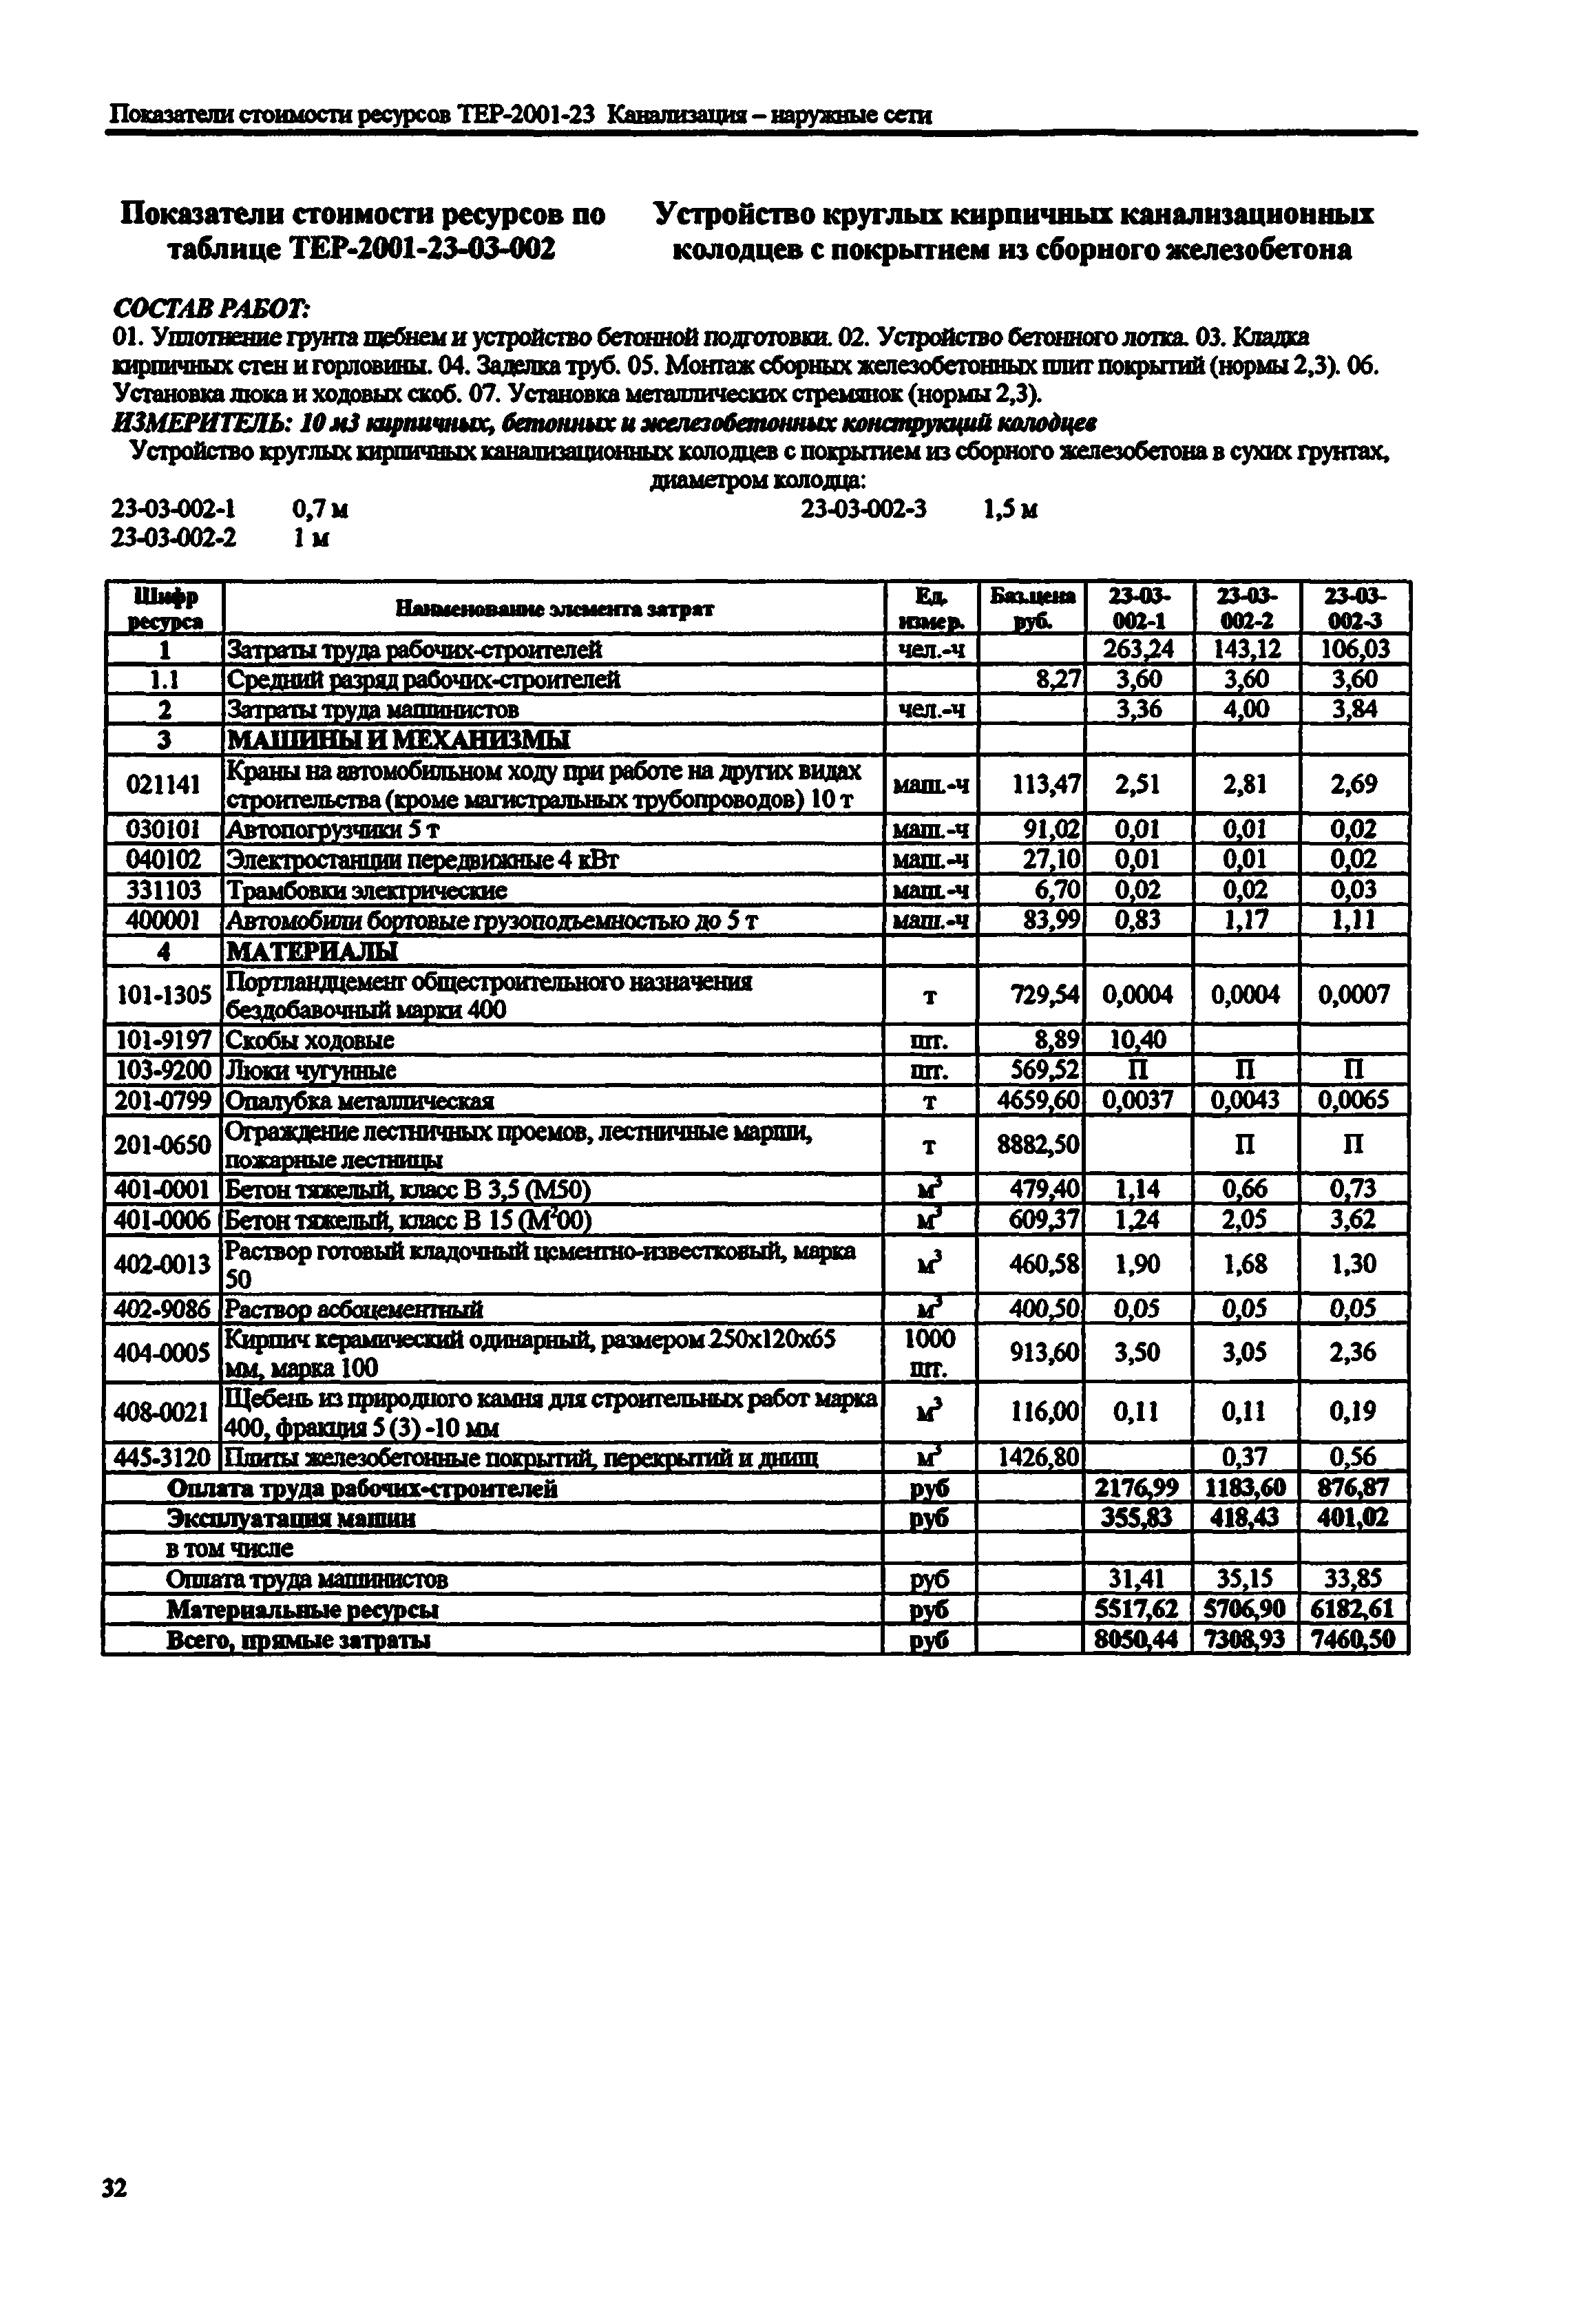 Справочное пособие к ТЕР 81-02-23-2001